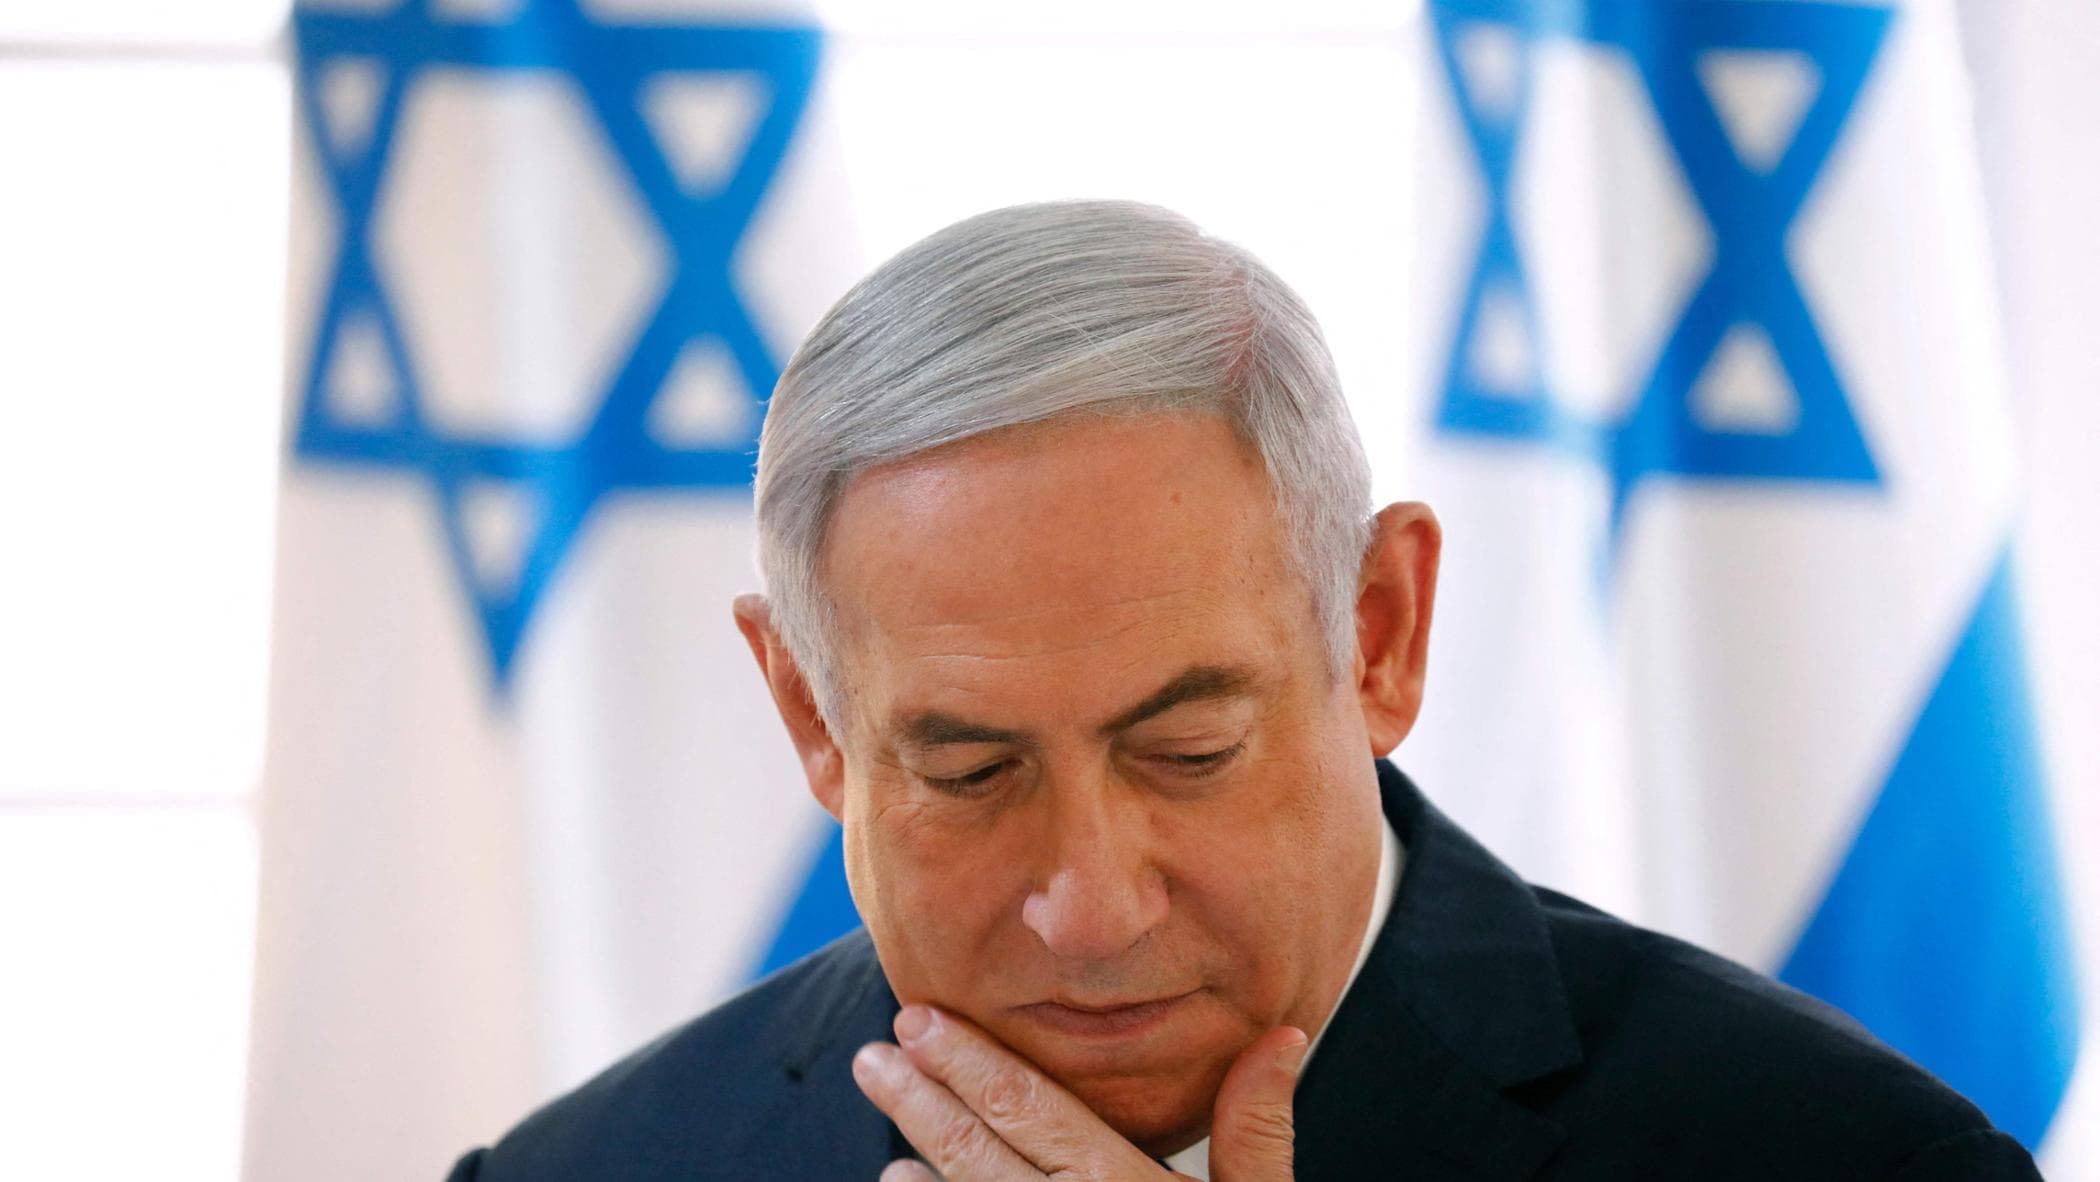 Guerra in Israele, le notizie di oggi. Il Procuratore capo dell’Aja chiede alla corte penale di emettere mandato d’arresto per Netanyahu e il leader Hamas Sinwar: “Colpevoli di crimini di guerra e contro l’umanità”